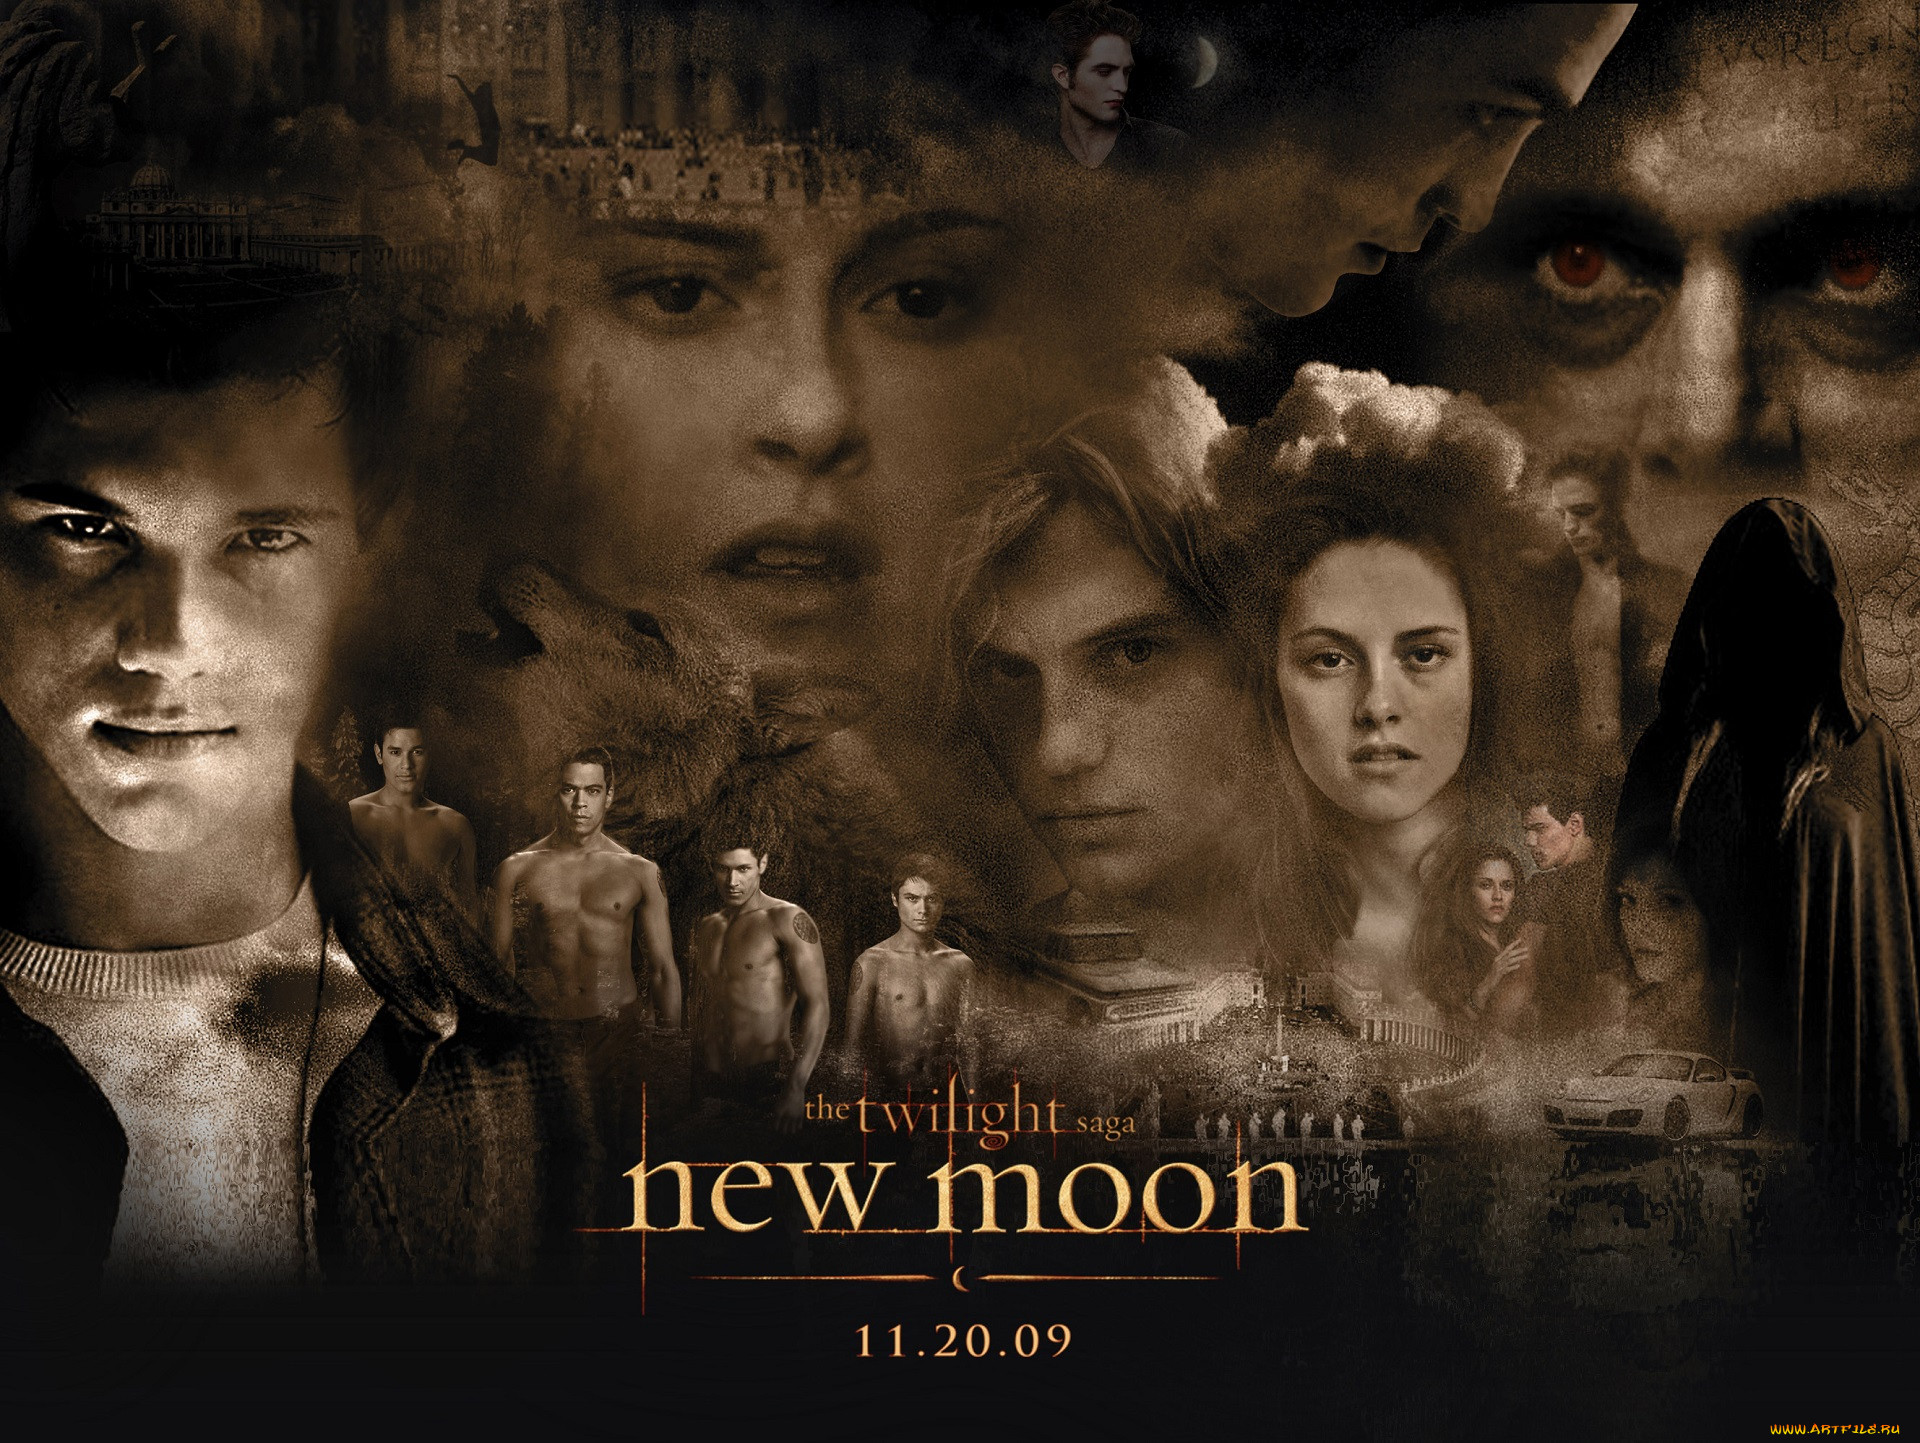  , the twilight saga,  new moon, 